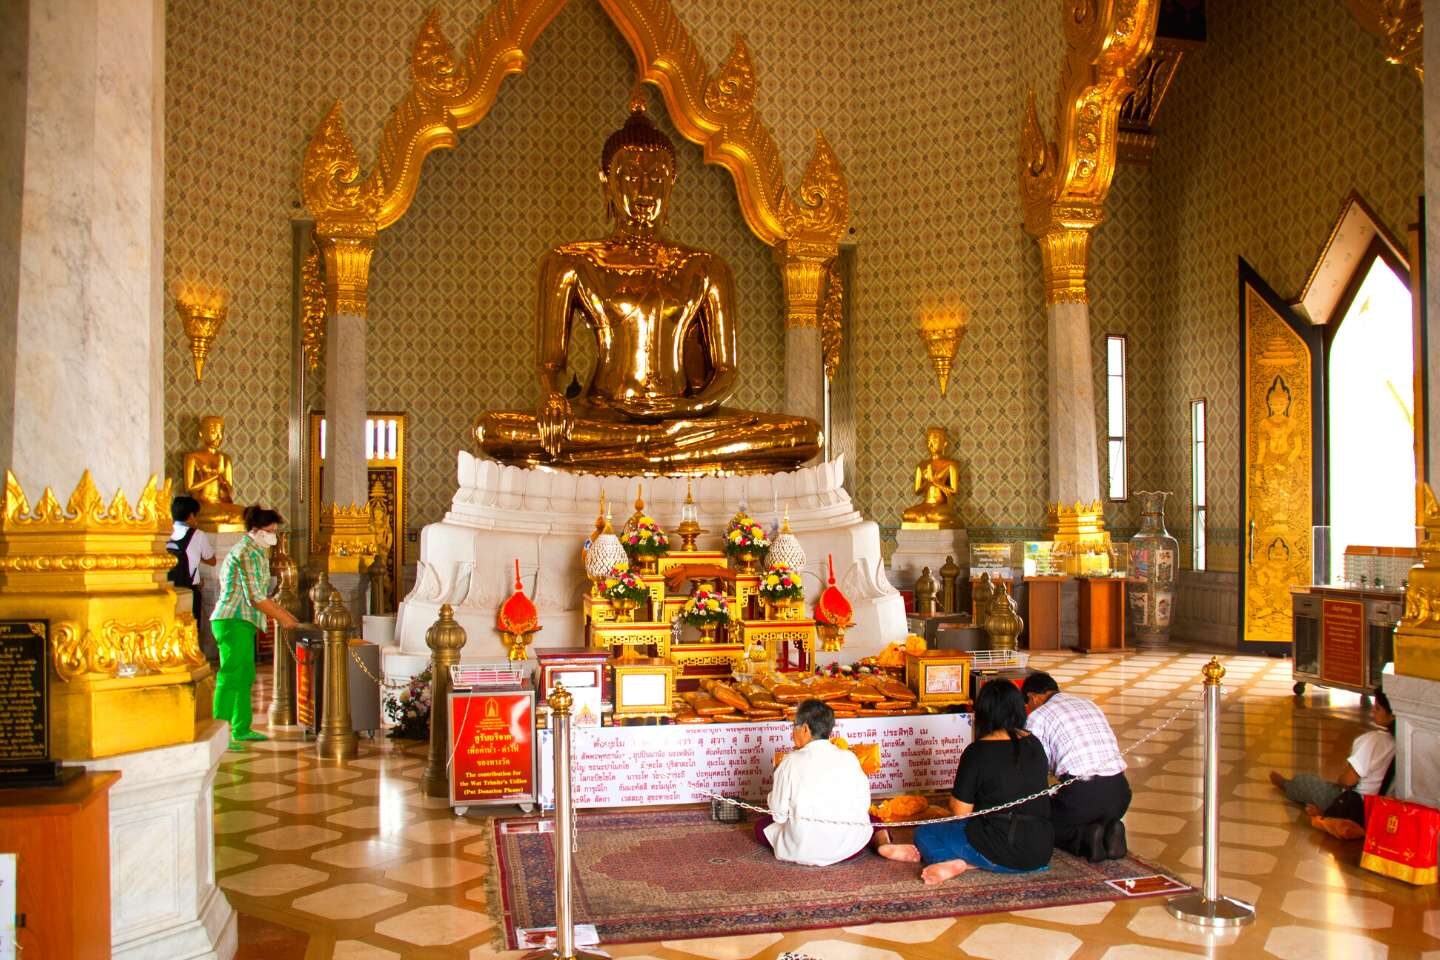 Golden Buddha in Wat Traimit, Thailand